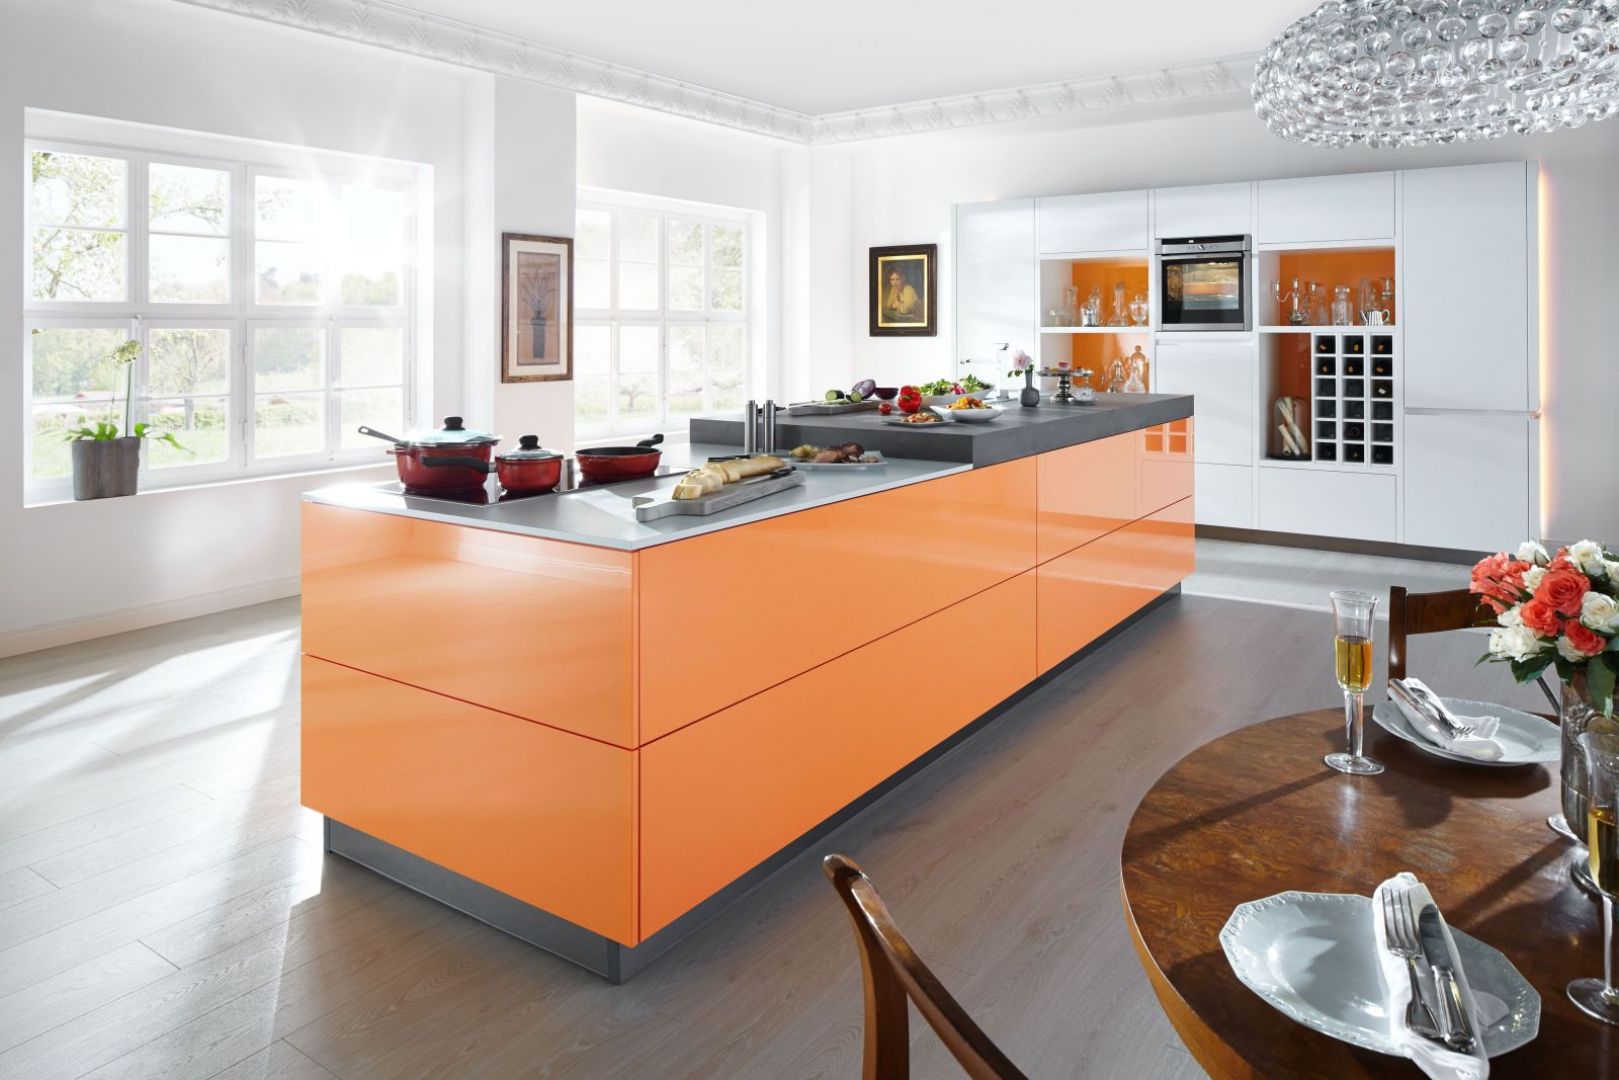 Wyspa kuchenna w żywym kolorze odświeży całe wnętrze. Fot. Home Concept